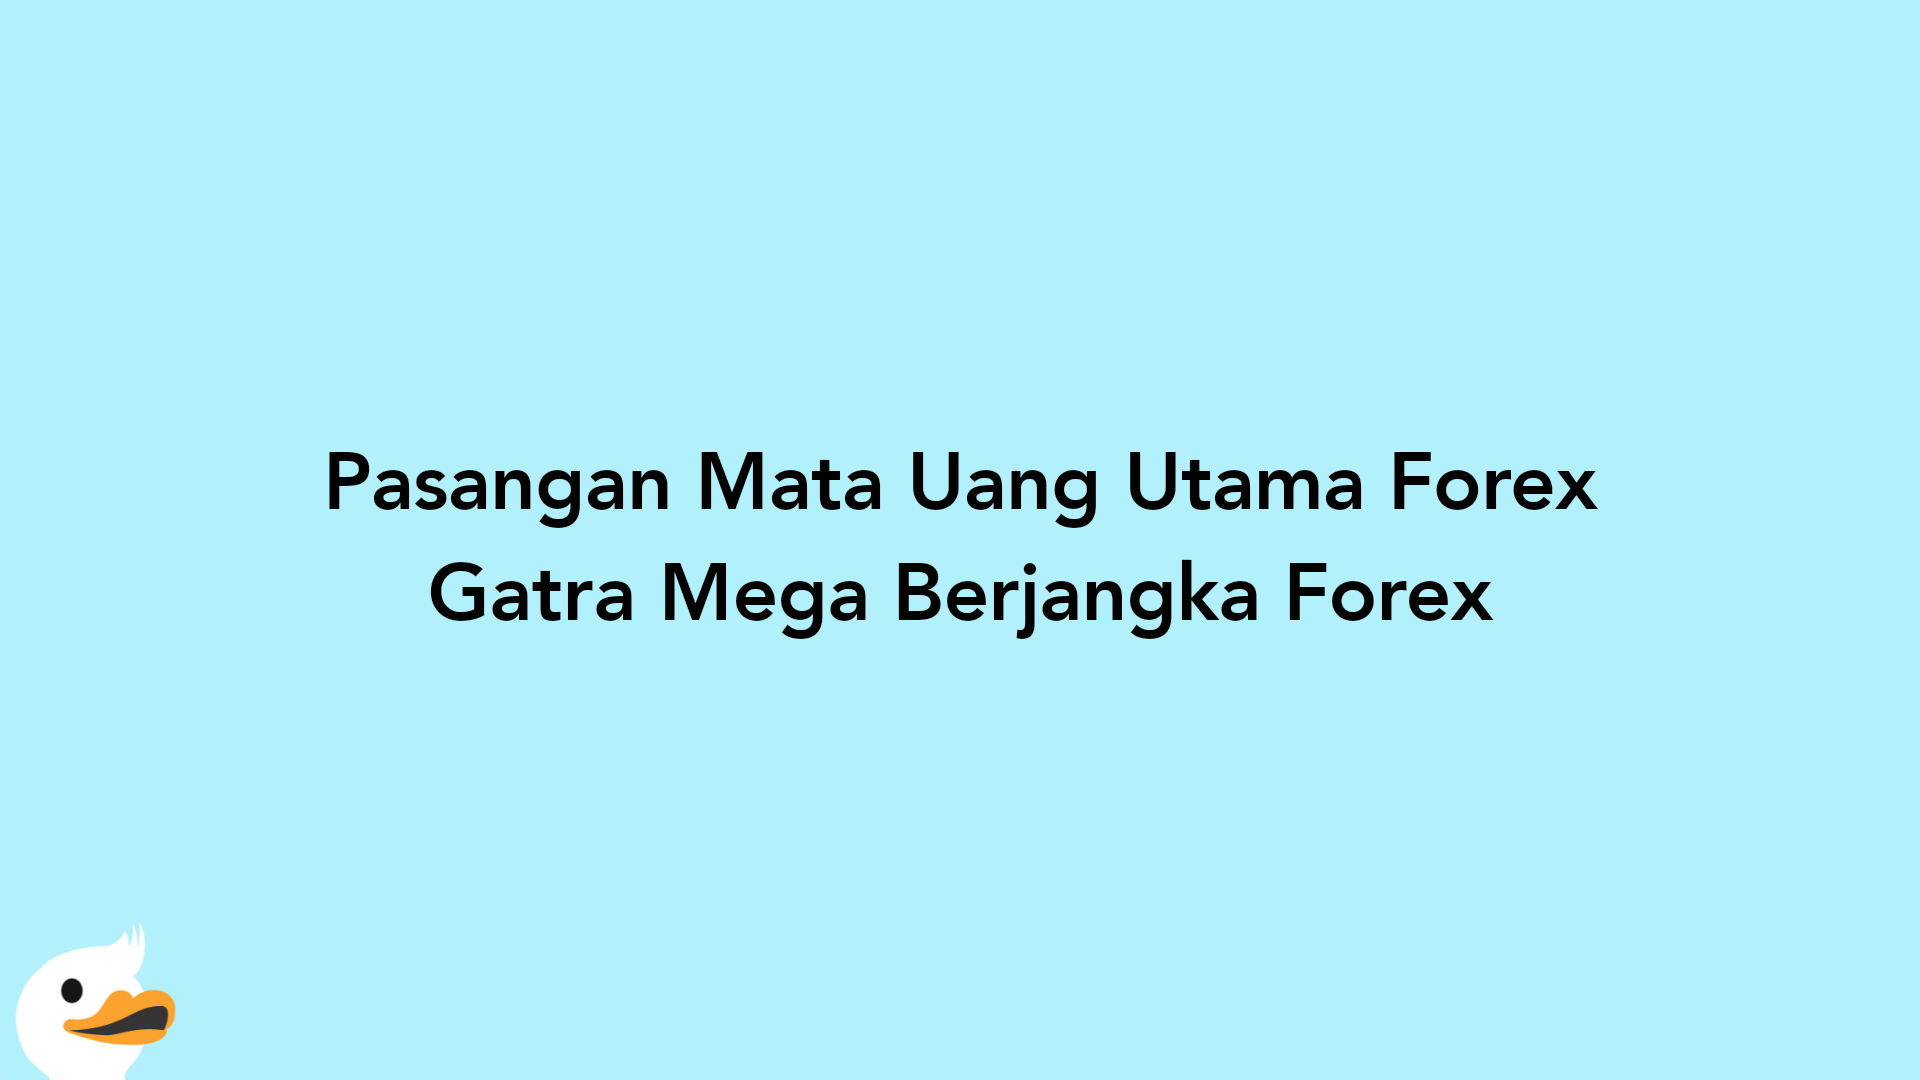 Pasangan Mata Uang Utama Forex Gatra Mega Berjangka Forex